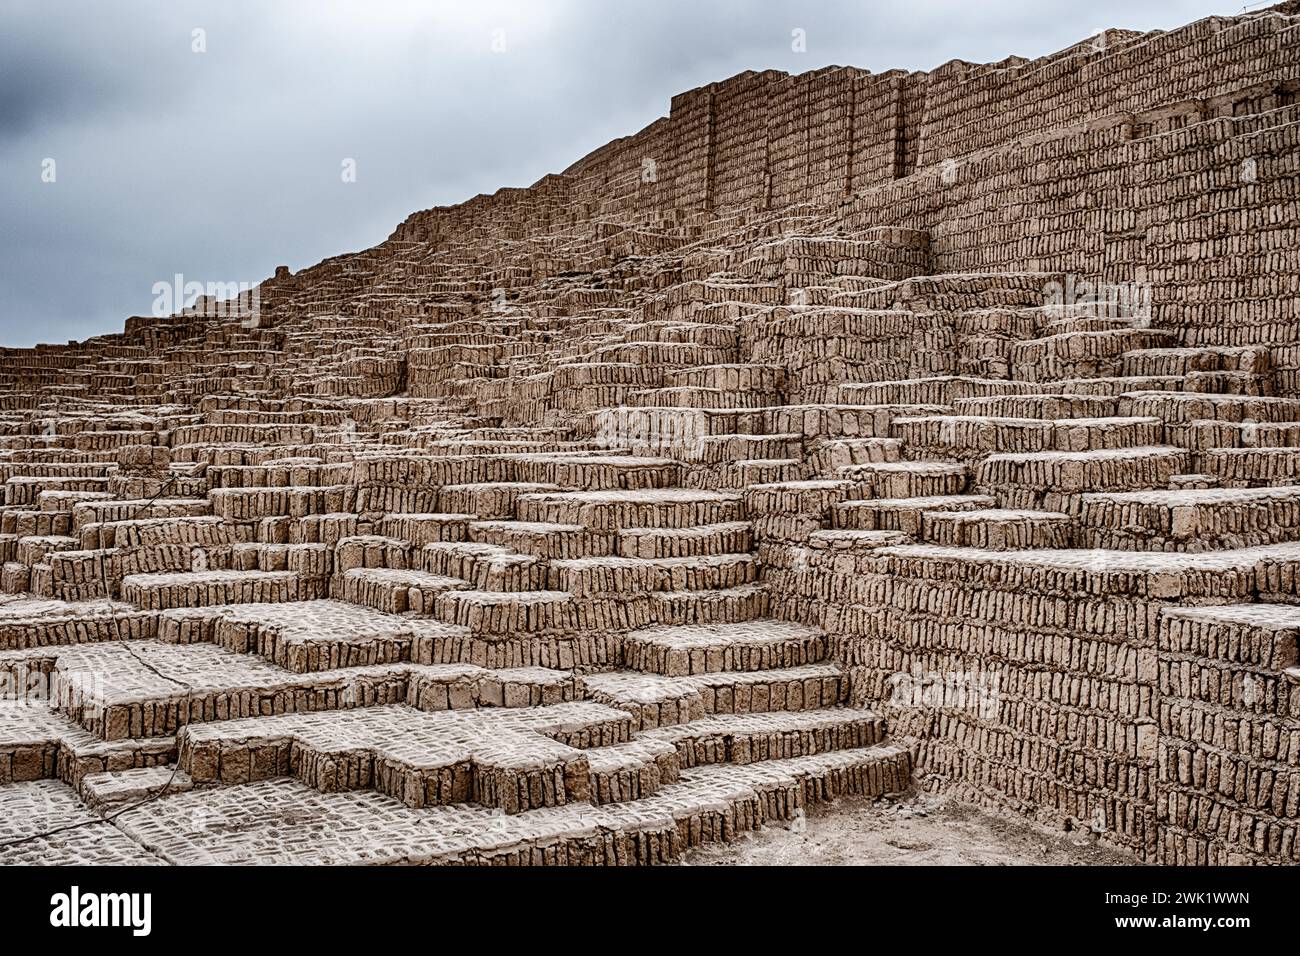 Die Huaca Pucllana-Pyramide besteht aus lehmziegeln, die sich in Lima in den Himmel erheben. Stockfoto